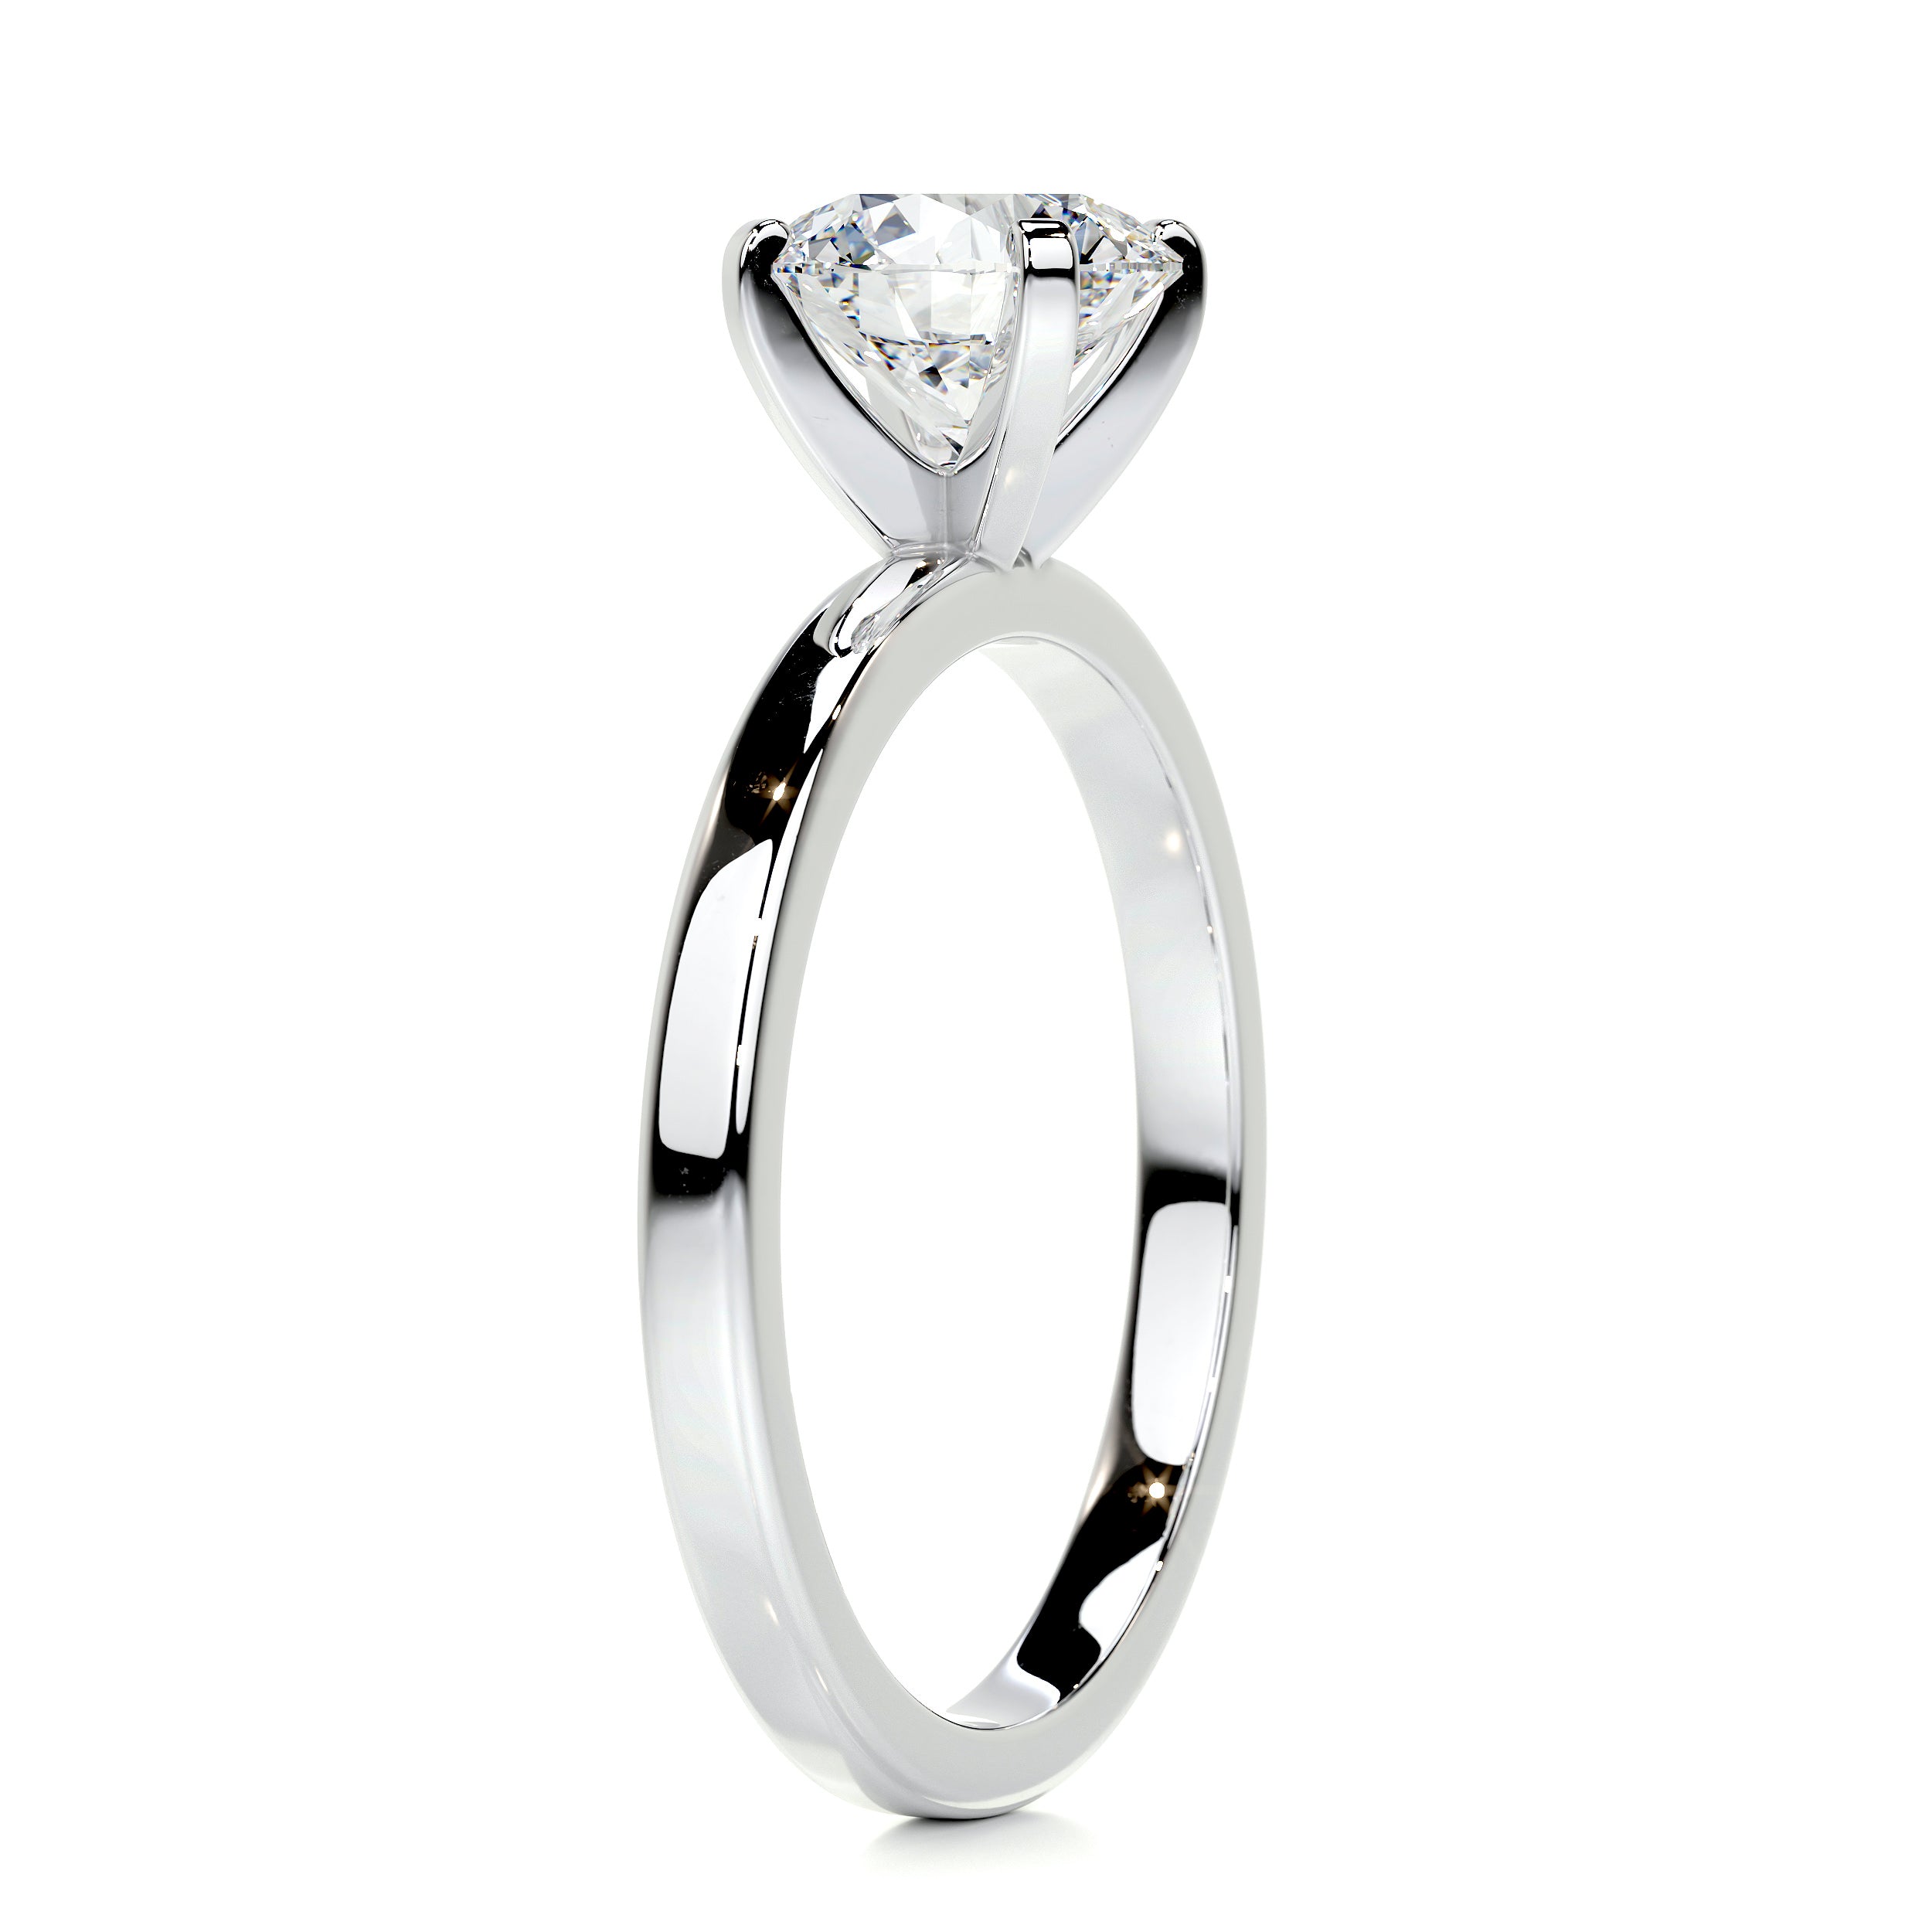 Jessica Diamond Engagement Ring   (1 Carat) -Platinum